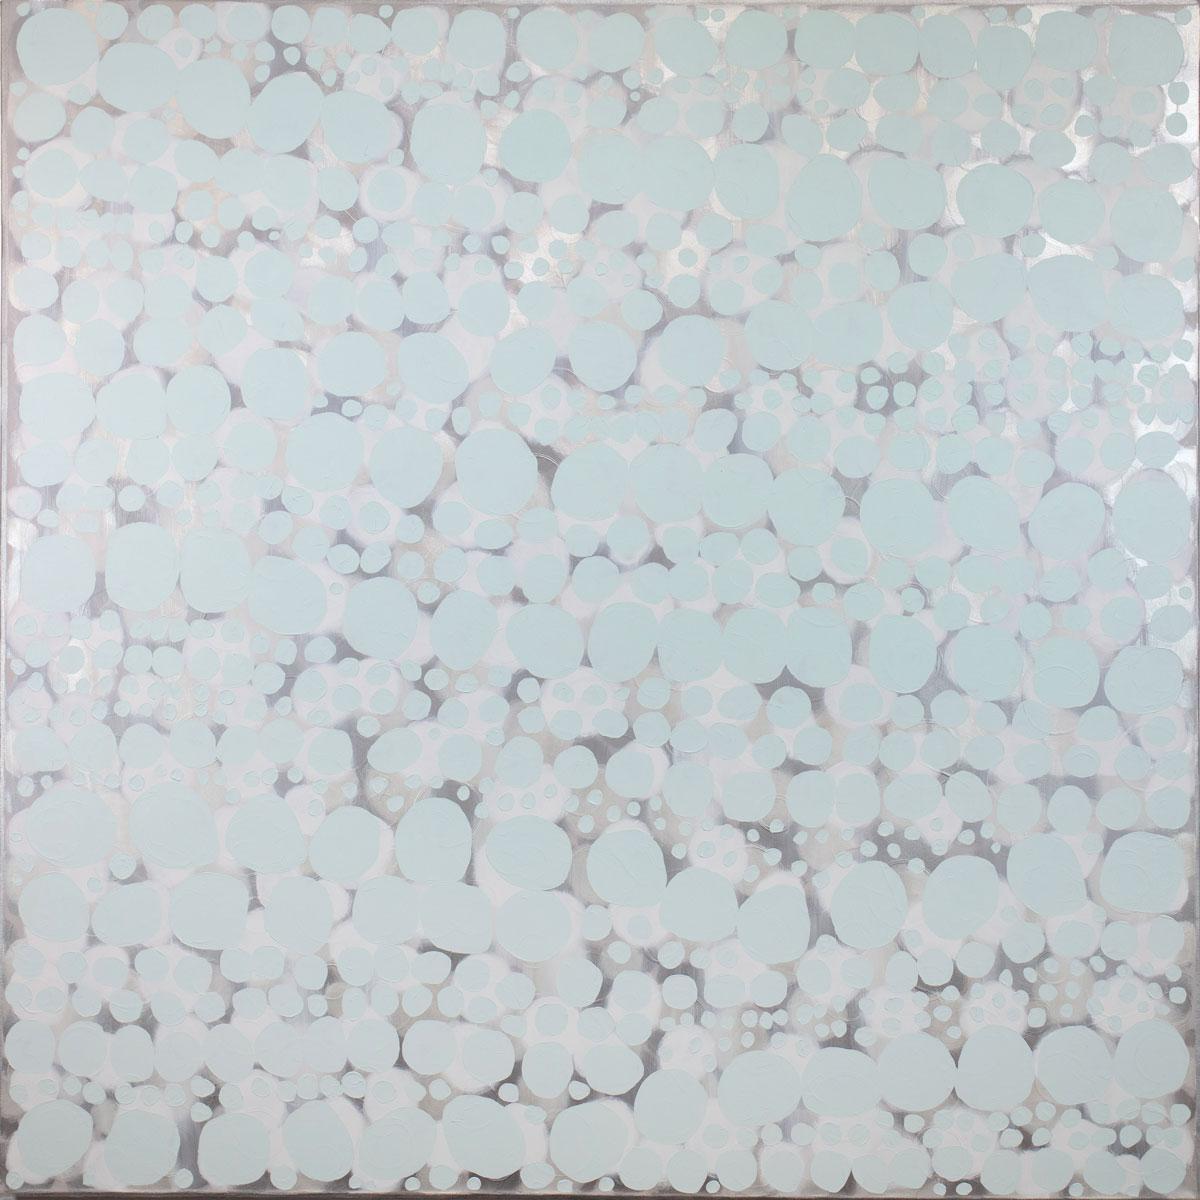 Ce grand tableau abstrait de Sofie Swann présente une palette de gris clair avec de subtils accents d'argent métallique, et des formes circulaires imparfaites disposées en motif tout au long de la composition. Cette peinture est réalisée sur une